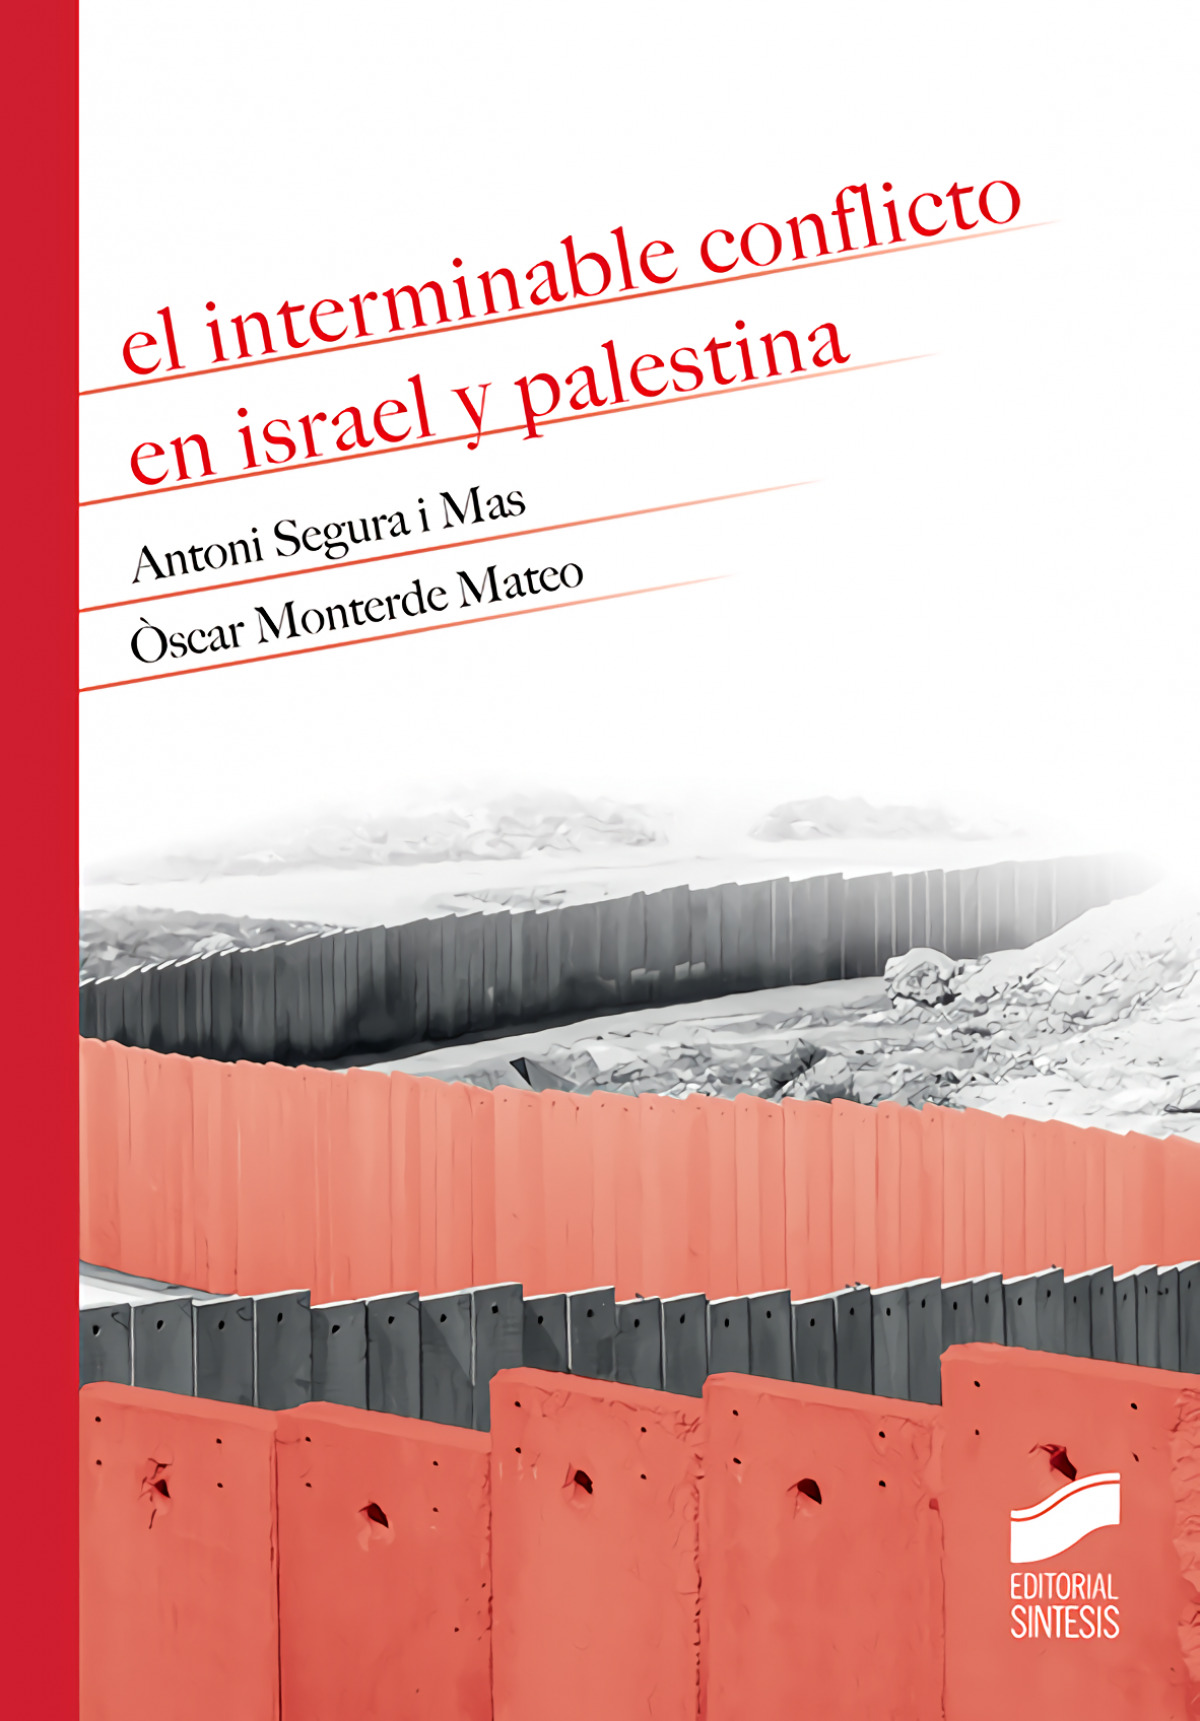 El interminable conflicto en israel y palestina - Segura I Mas, Antoni/Monteverde Mateo, Òscar